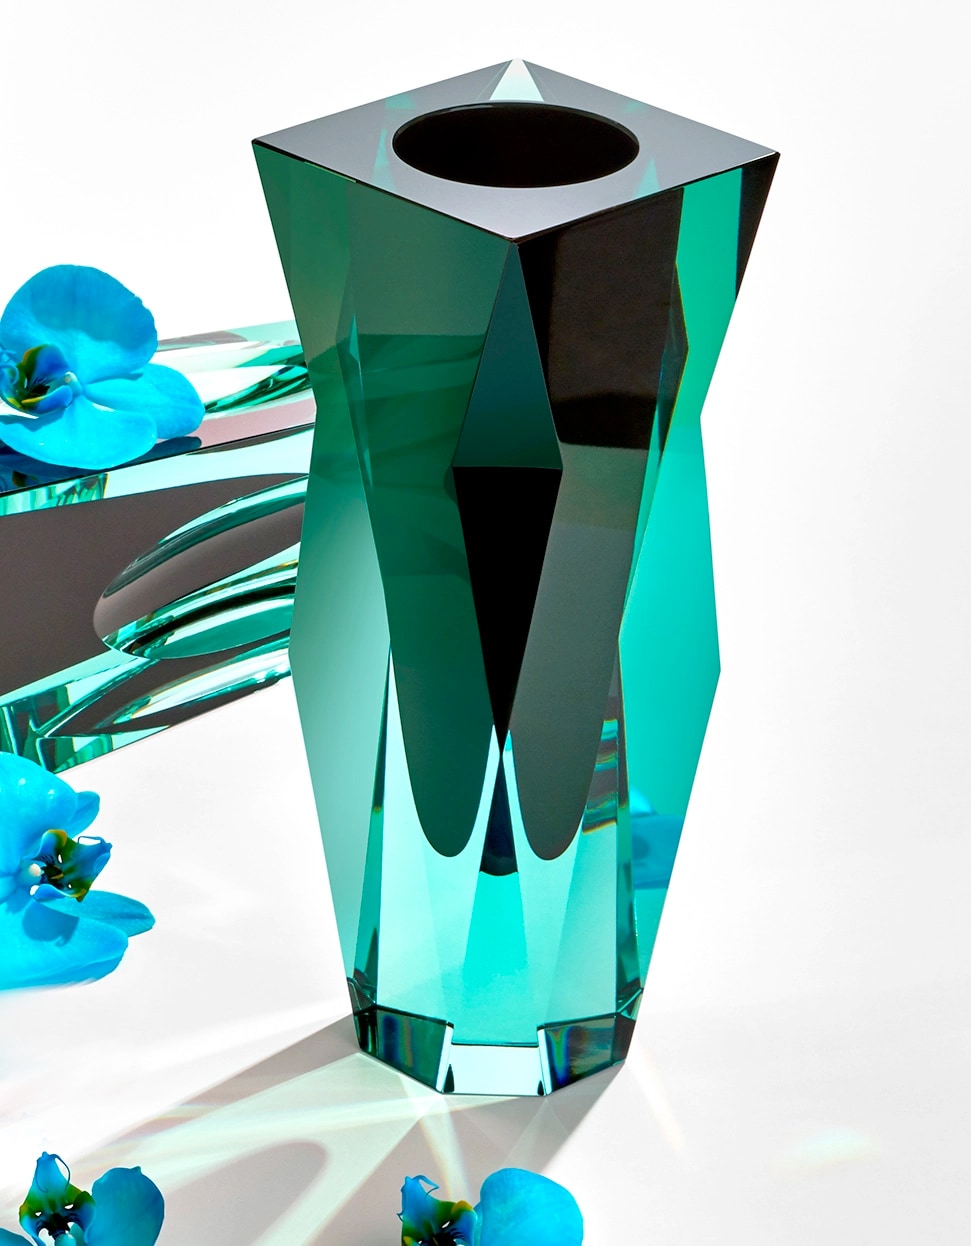 ボヘミアガラス モーゼル 花瓶 ファセット ( Bohemian Glass Moser Facet Vase )